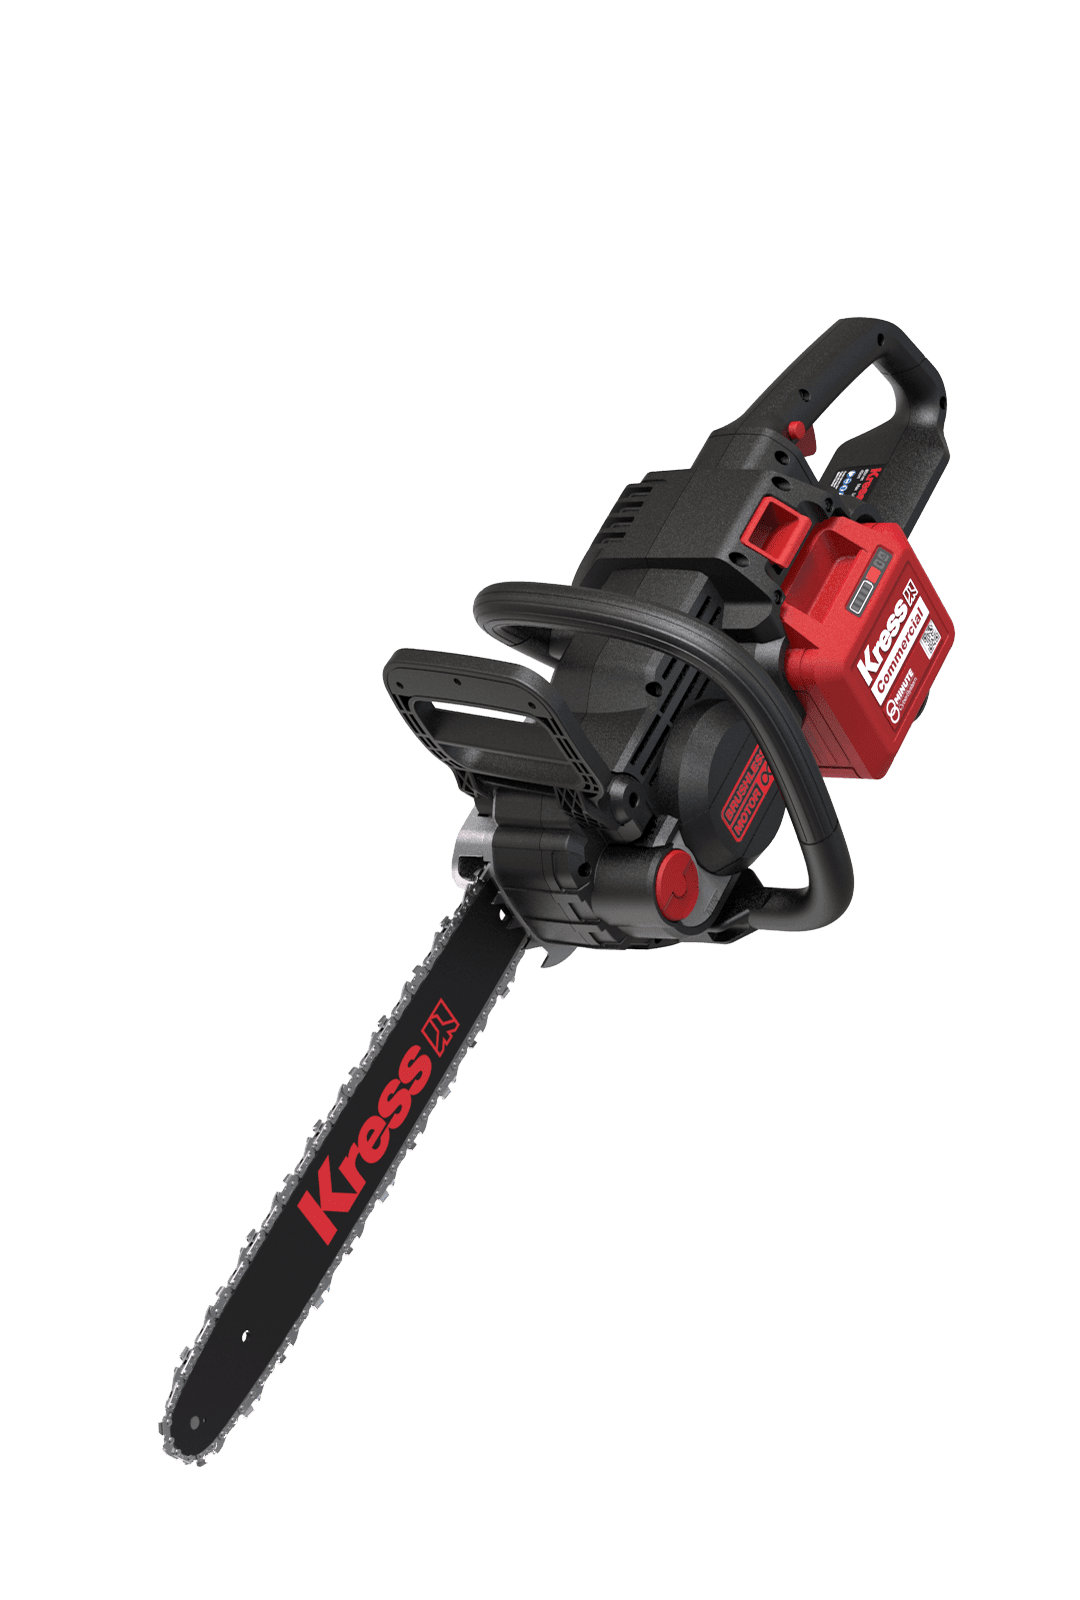 Kress Commercial 60 V 16” chainsaw